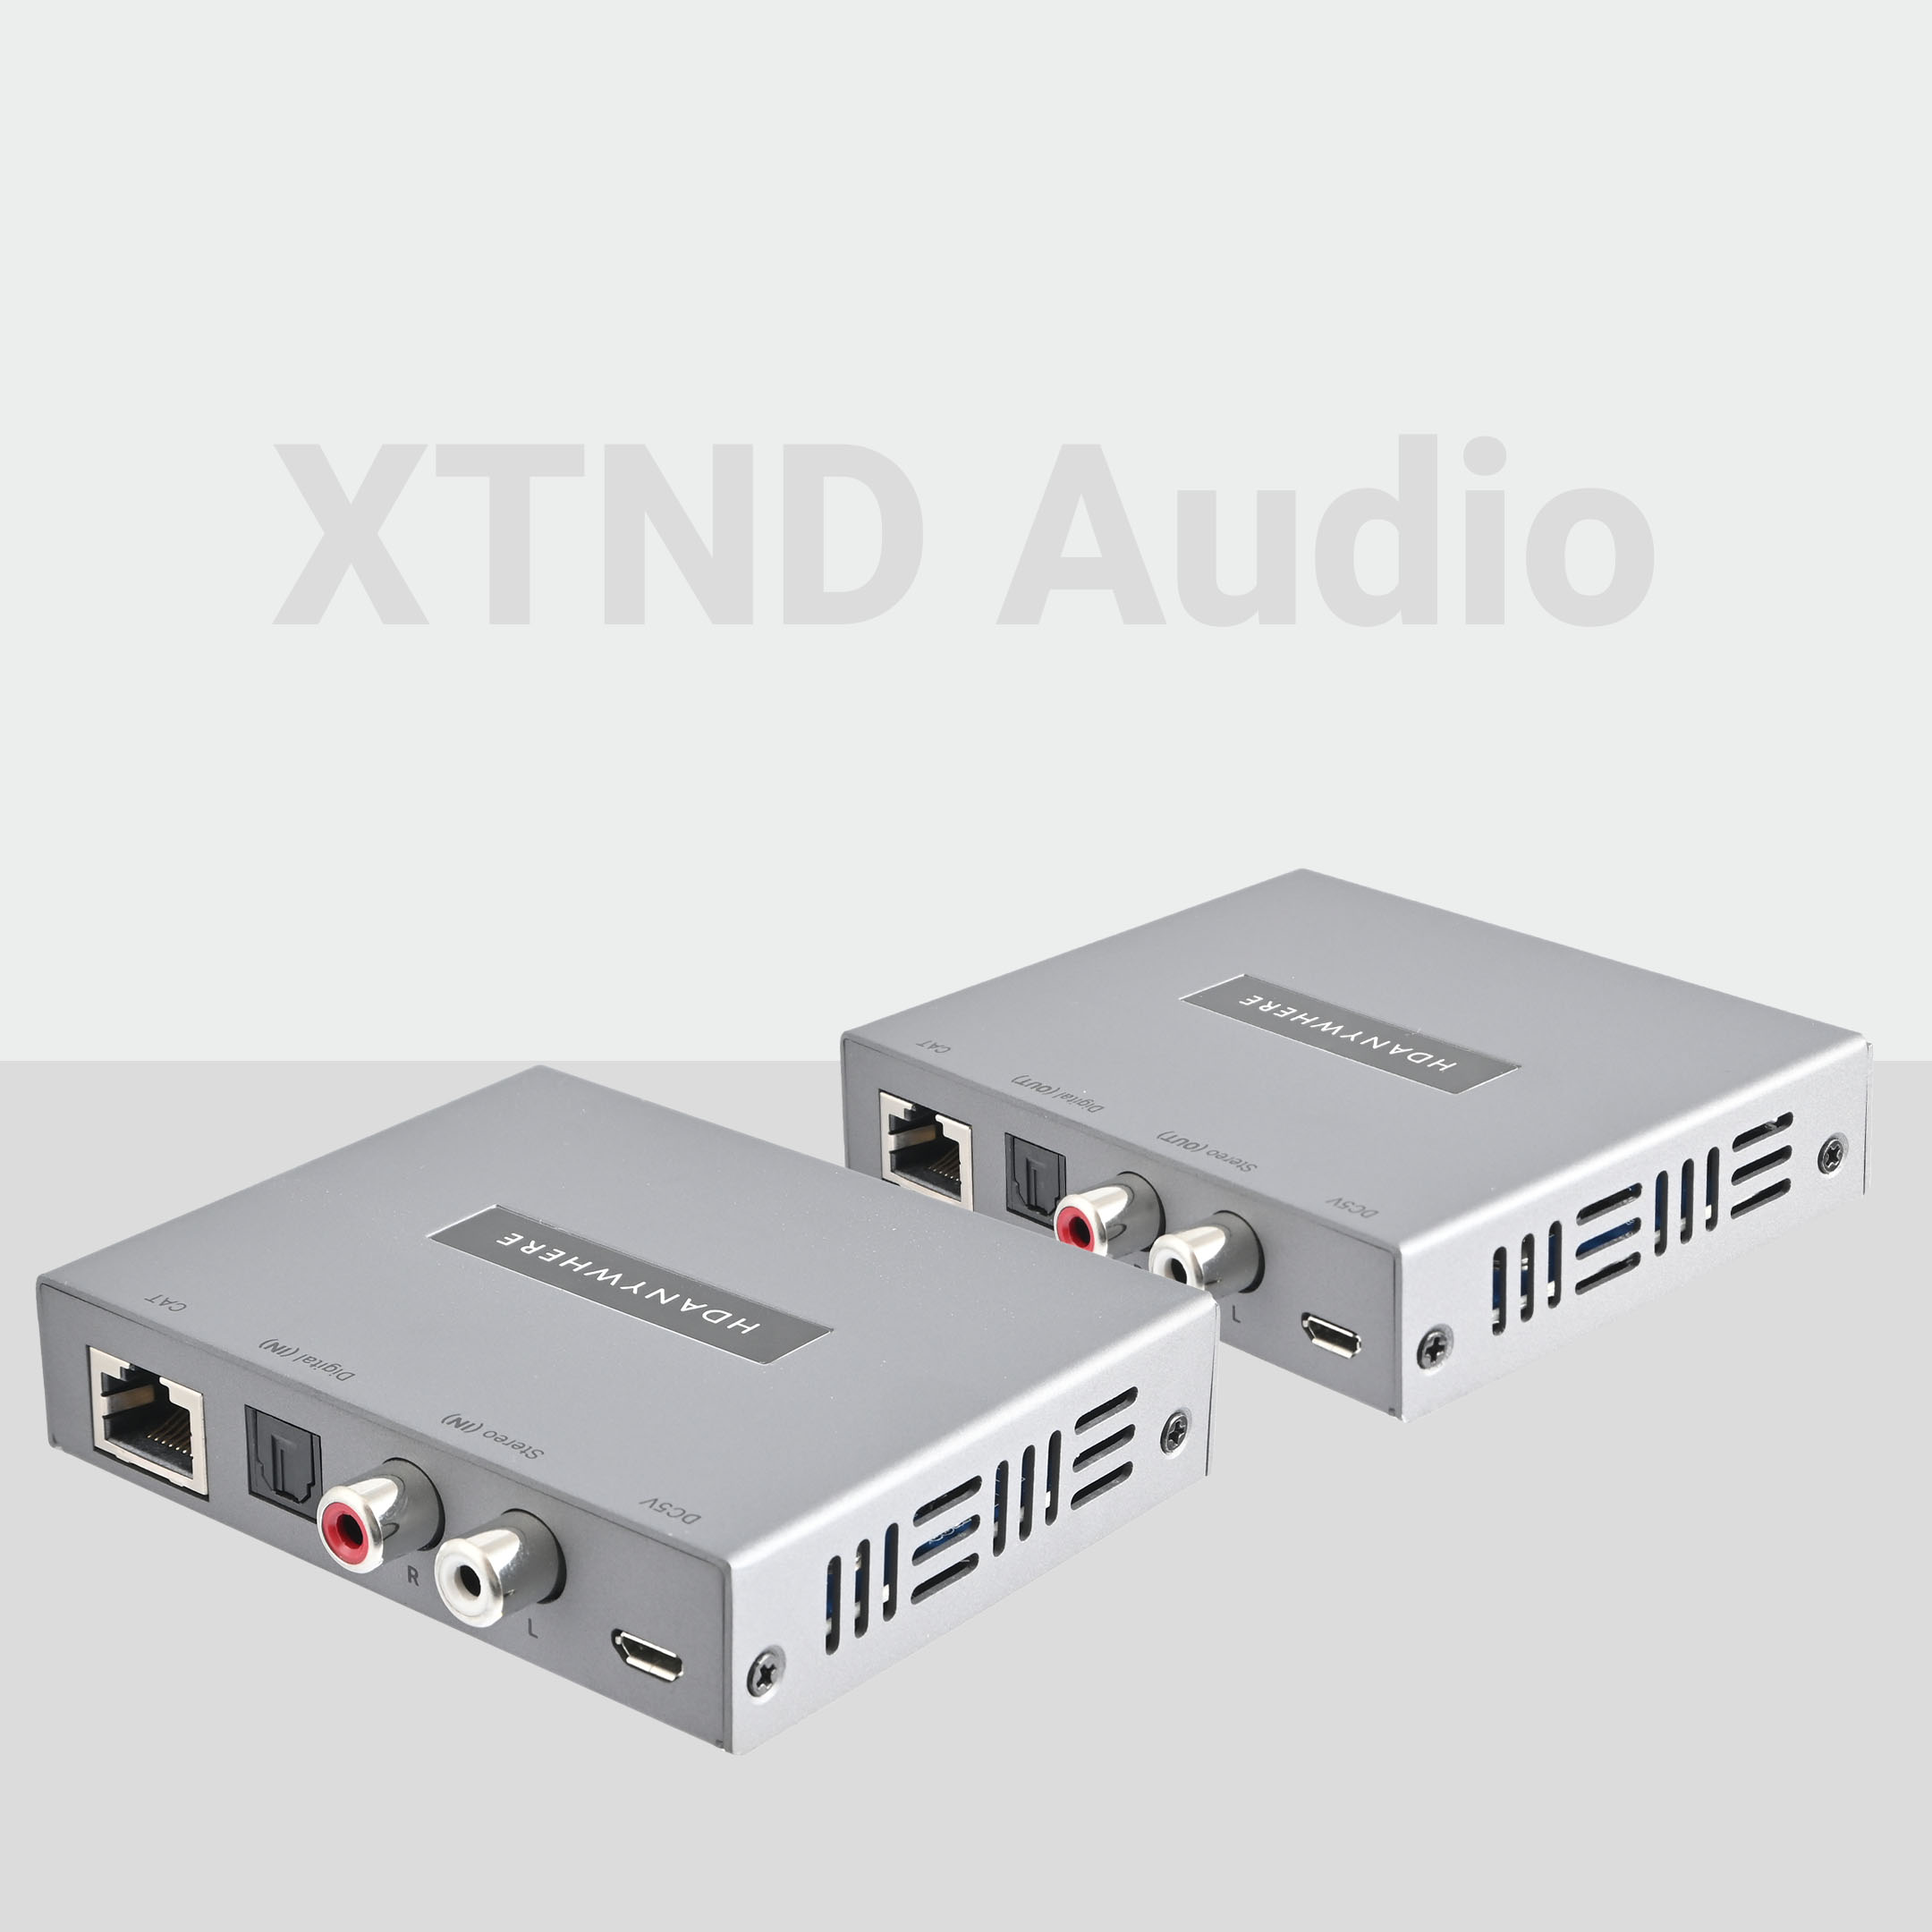 XTND Audio (300)